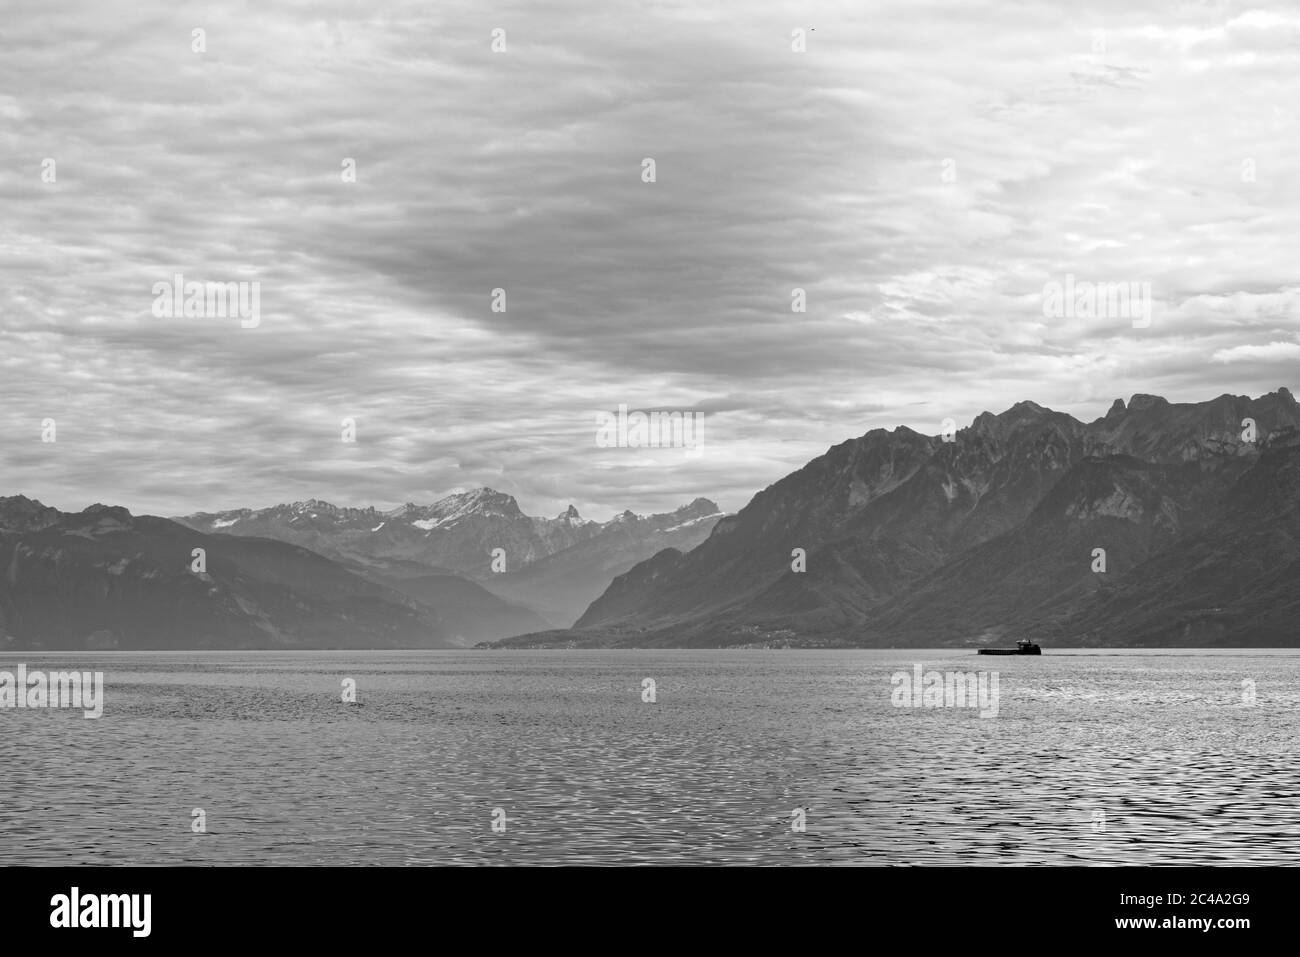 Ein landschaftlich schöner Blick auf den Genfer See mit einem Schiff. Der See ist mit einer Größe von 345 km² einer der größten in Westeuropa. Stockfoto